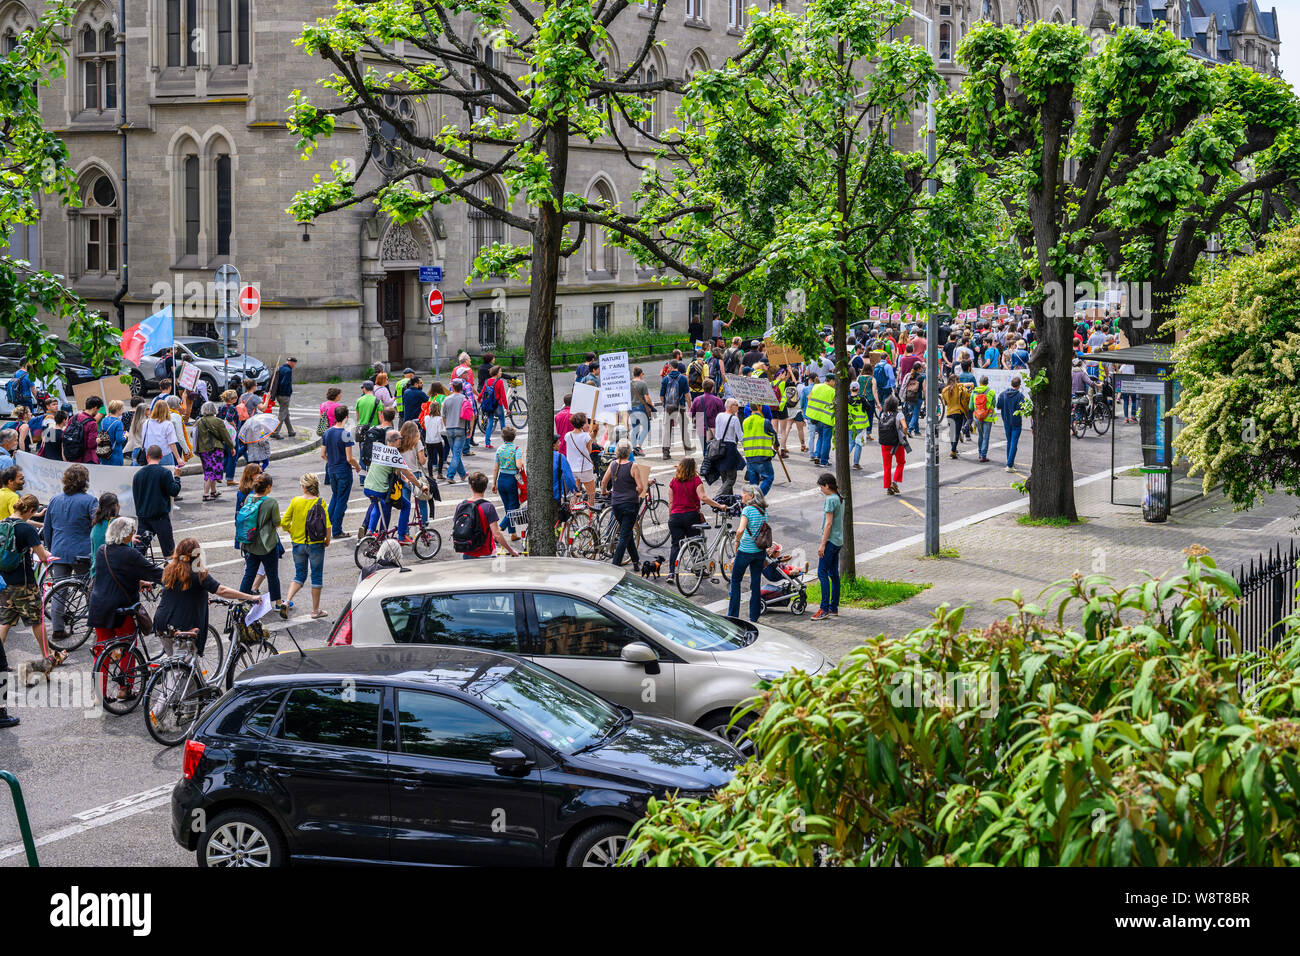 25 mai 2019, marche de protestation contre le réchauffement climatique, Strasbourg, Alsace, France, Europe, Banque D'Images